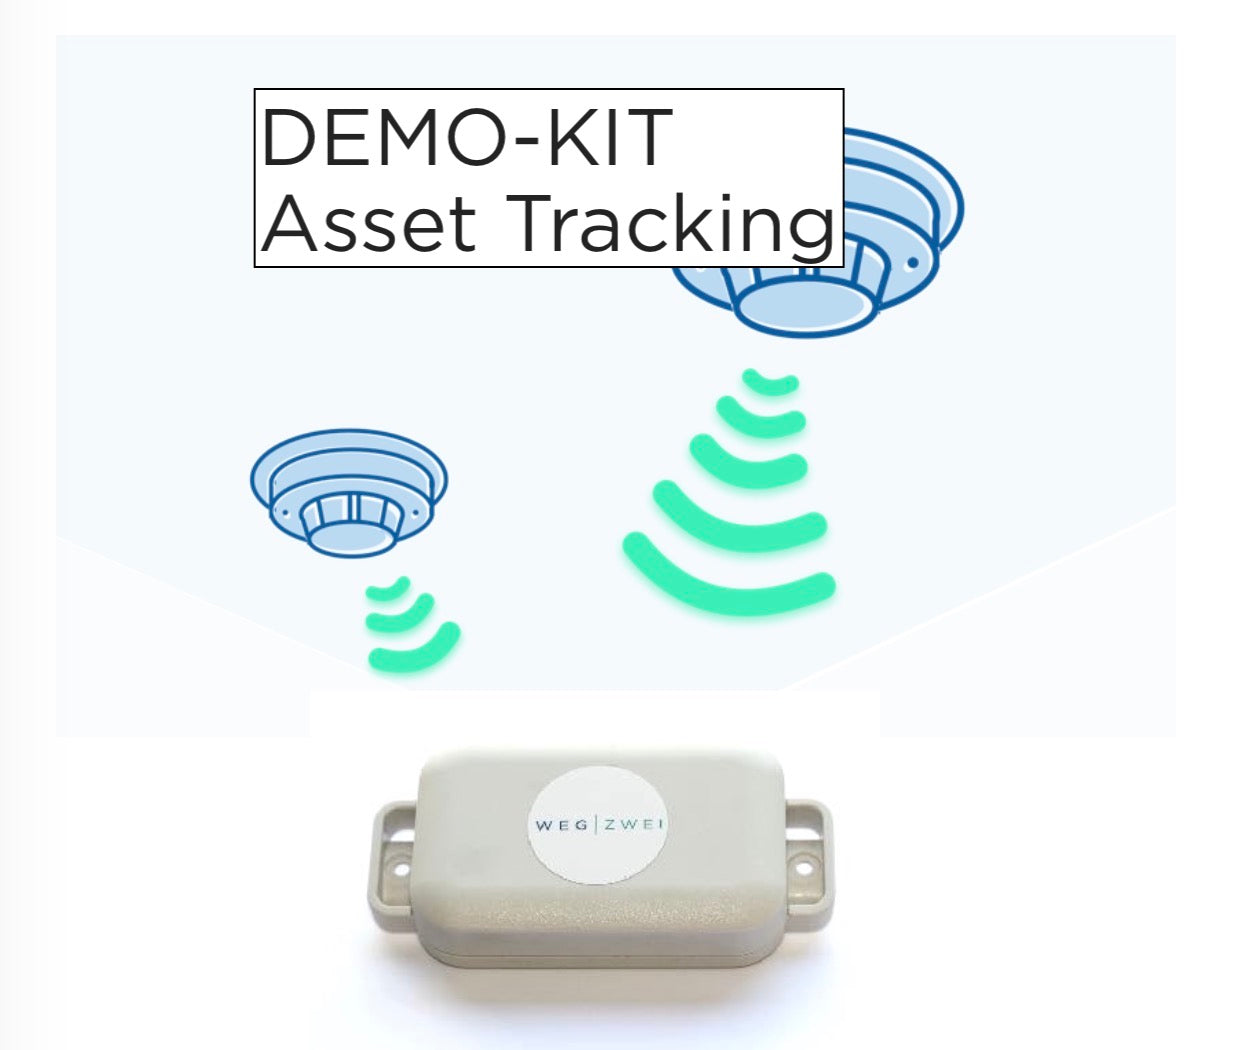 Demo Kit Asset Tracking